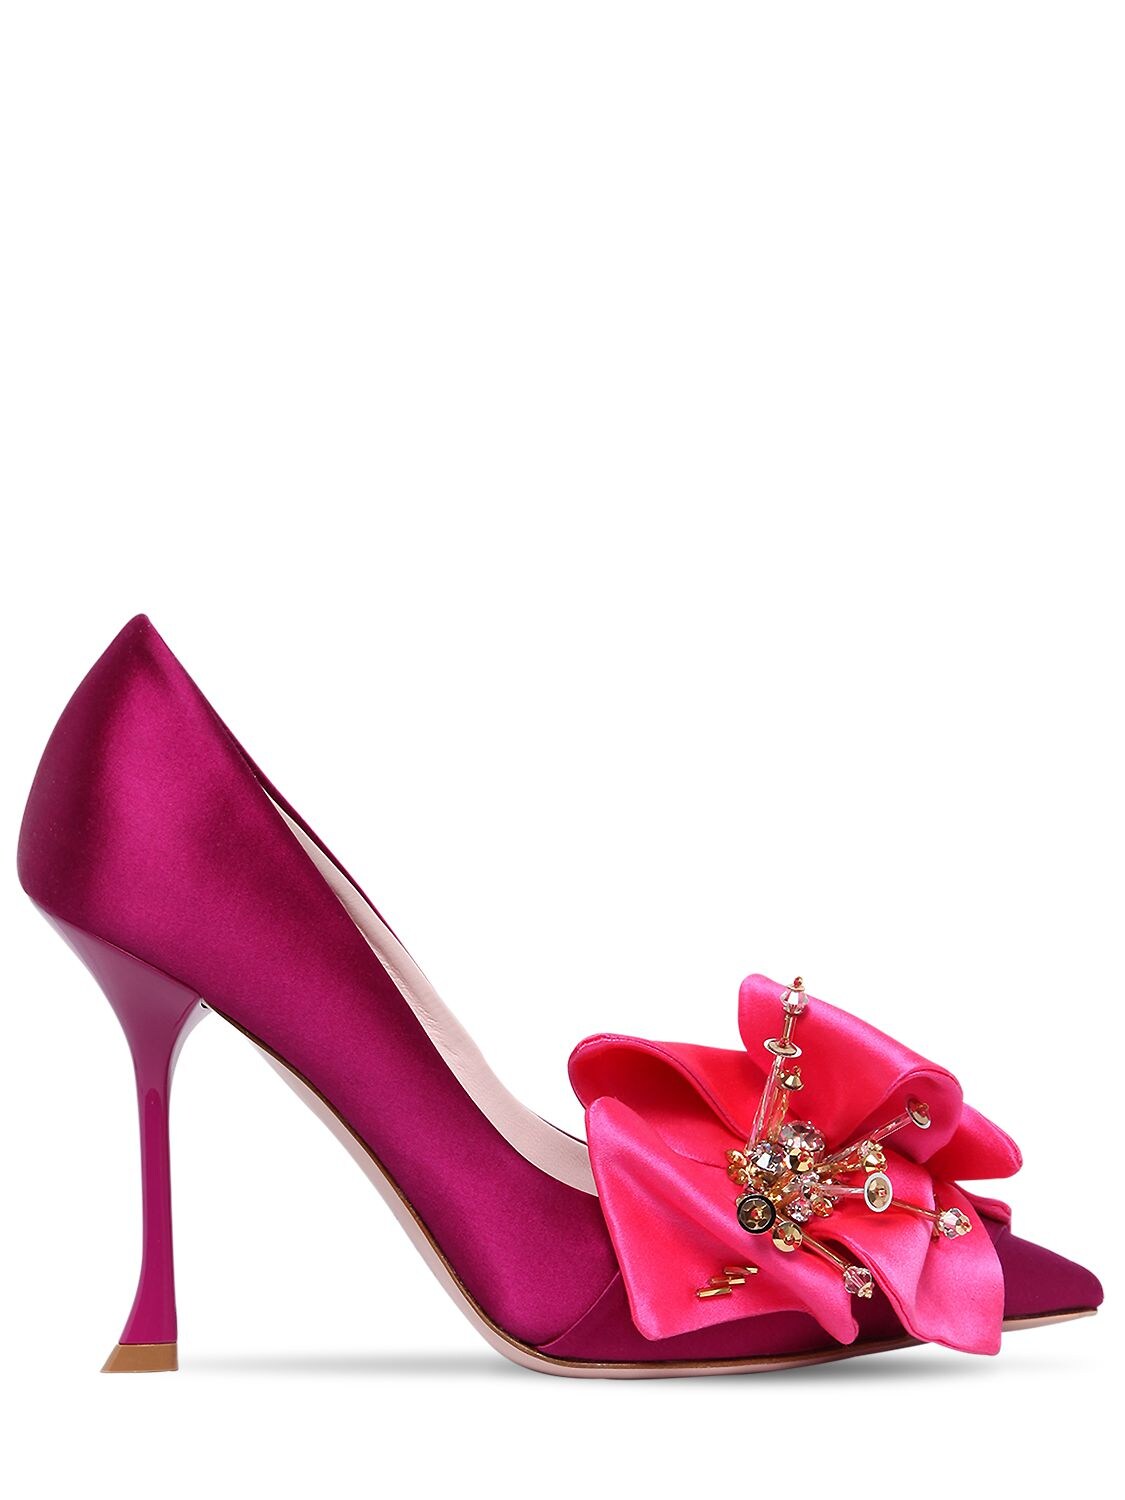 Roger Vivier 100毫米花朵装饰绸缎高跟鞋 In Fuchsia,pink